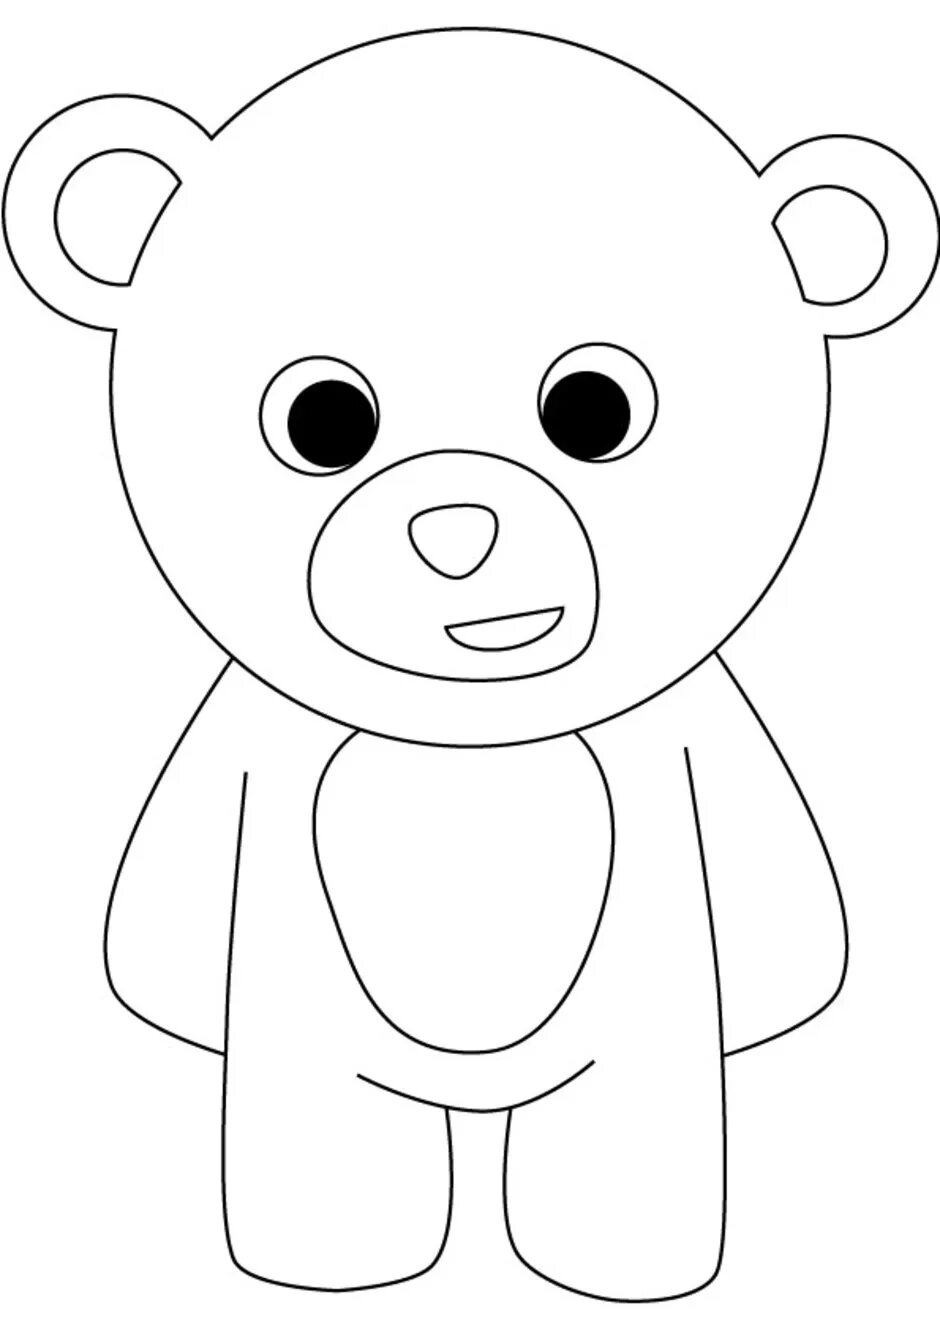 Раскраска. Медвежонок. Мишка раскраска для малышей. Медведь раскраска для детей. Медвежонок раскраска для детей. Раскраски для детей 3 года мишки